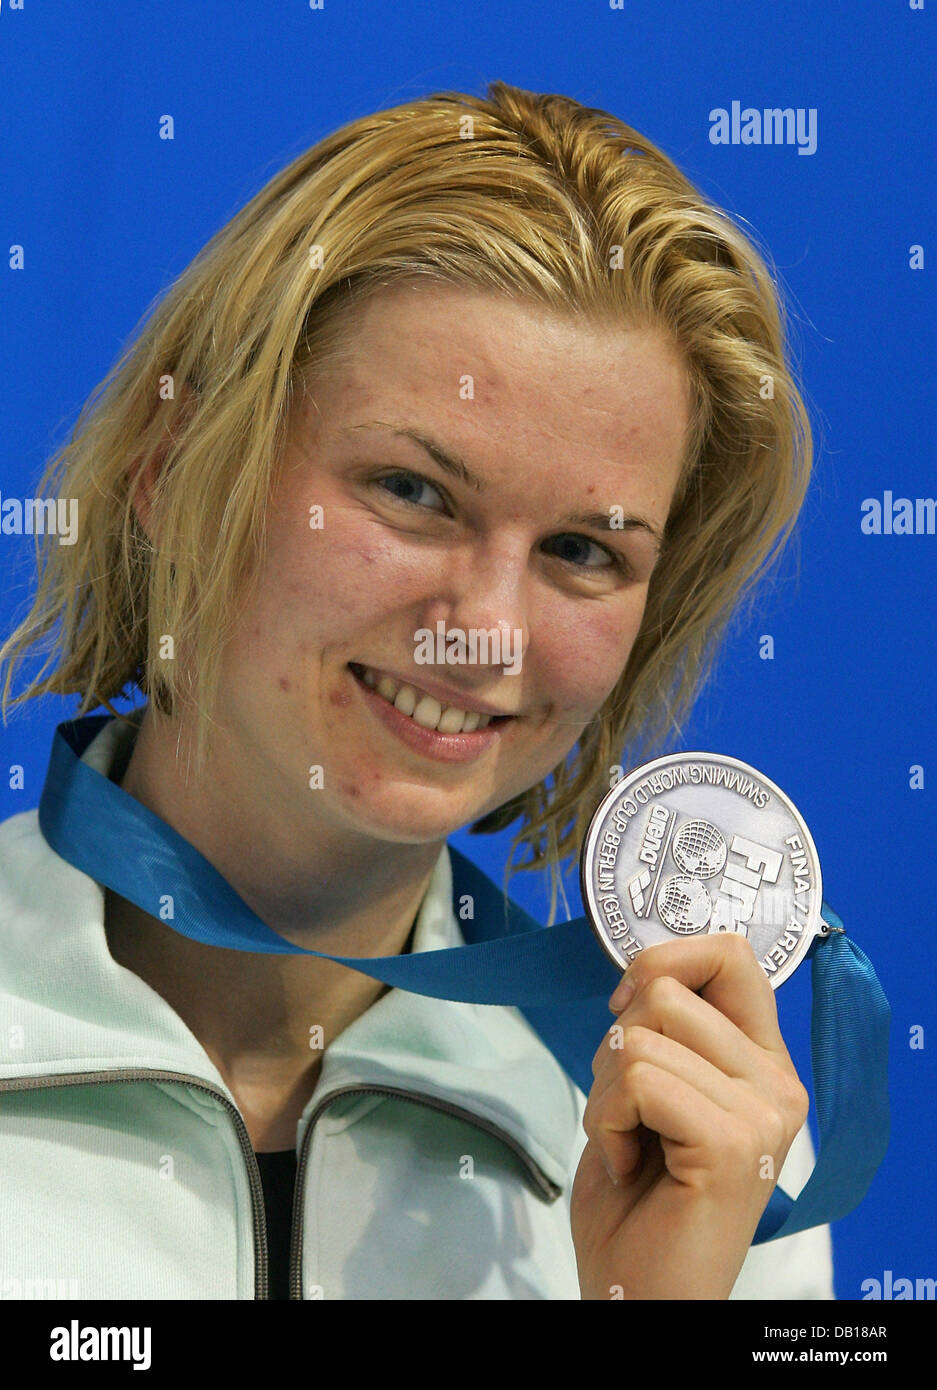 Zweitplatzierten deutschen Britta Steffen präsentiert ihre Silbermedaille nach 100 m Freistil Finale beim Swimming World Cup in Berlin, 18. November 2007. Foto: GERO BRELOER Stockfoto